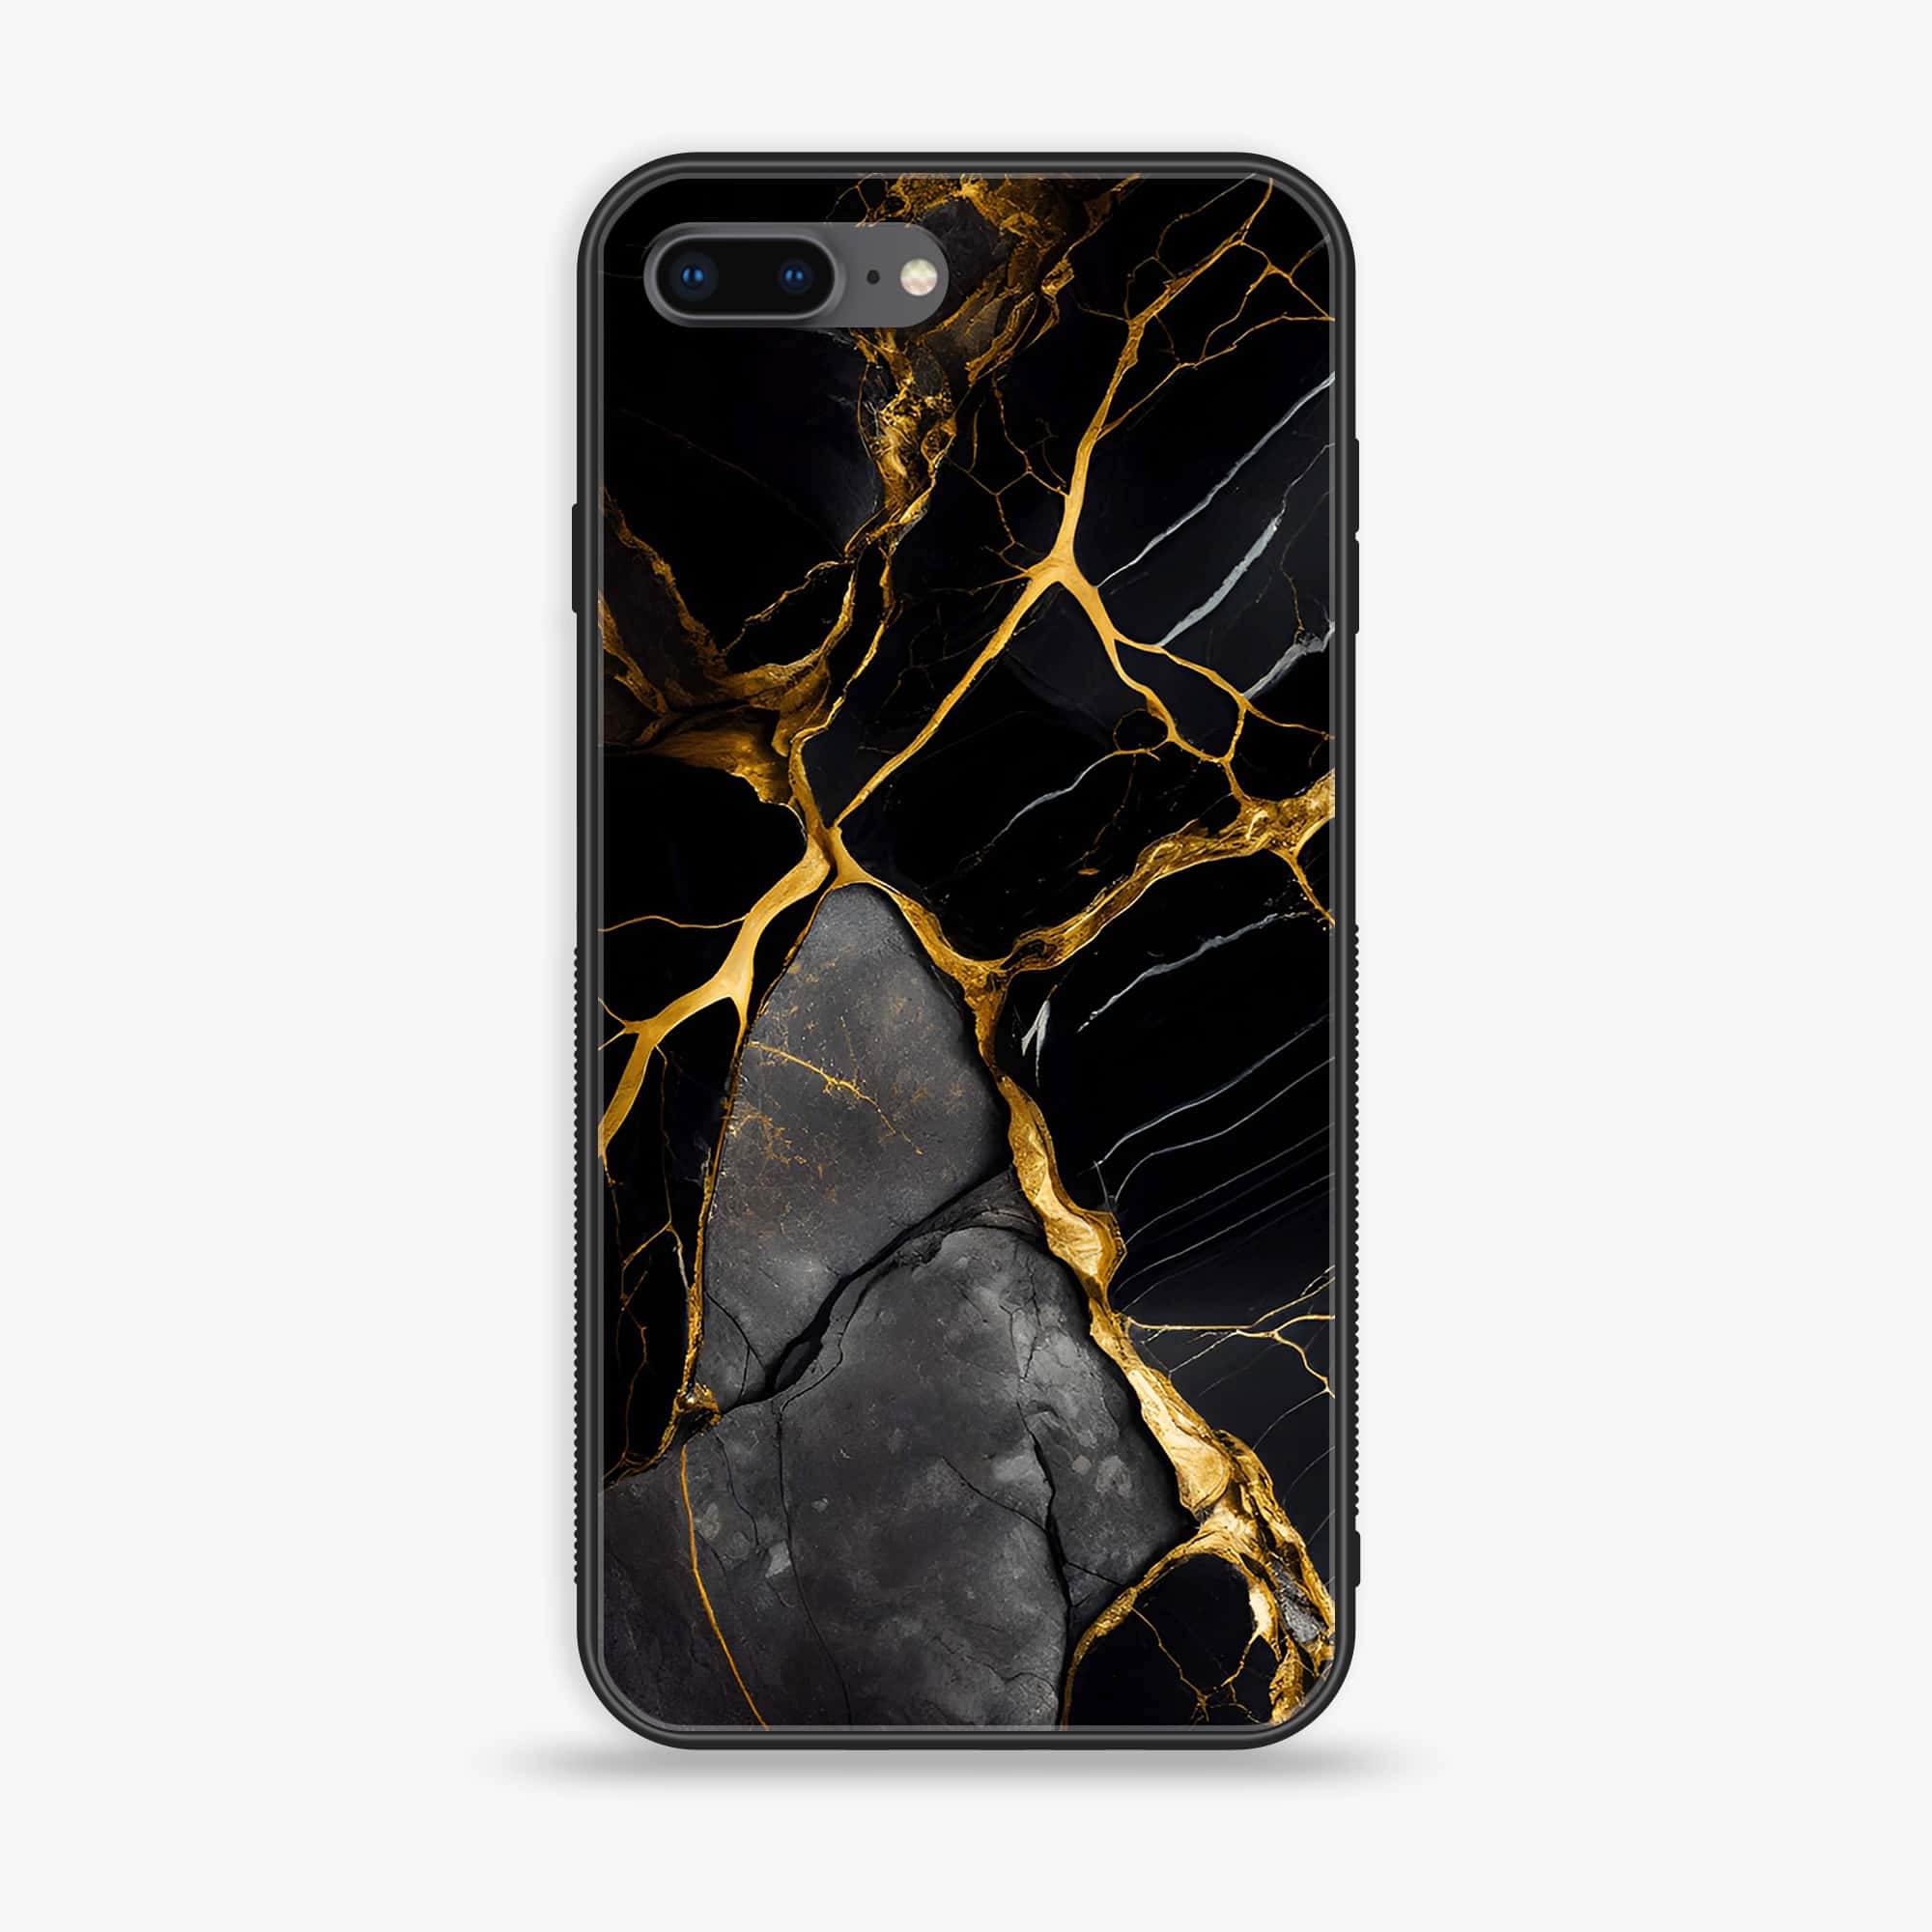 iPhone 8 Plus - Liquid Marble Series - Premium Printed Glass soft Bumper shock Proof Case